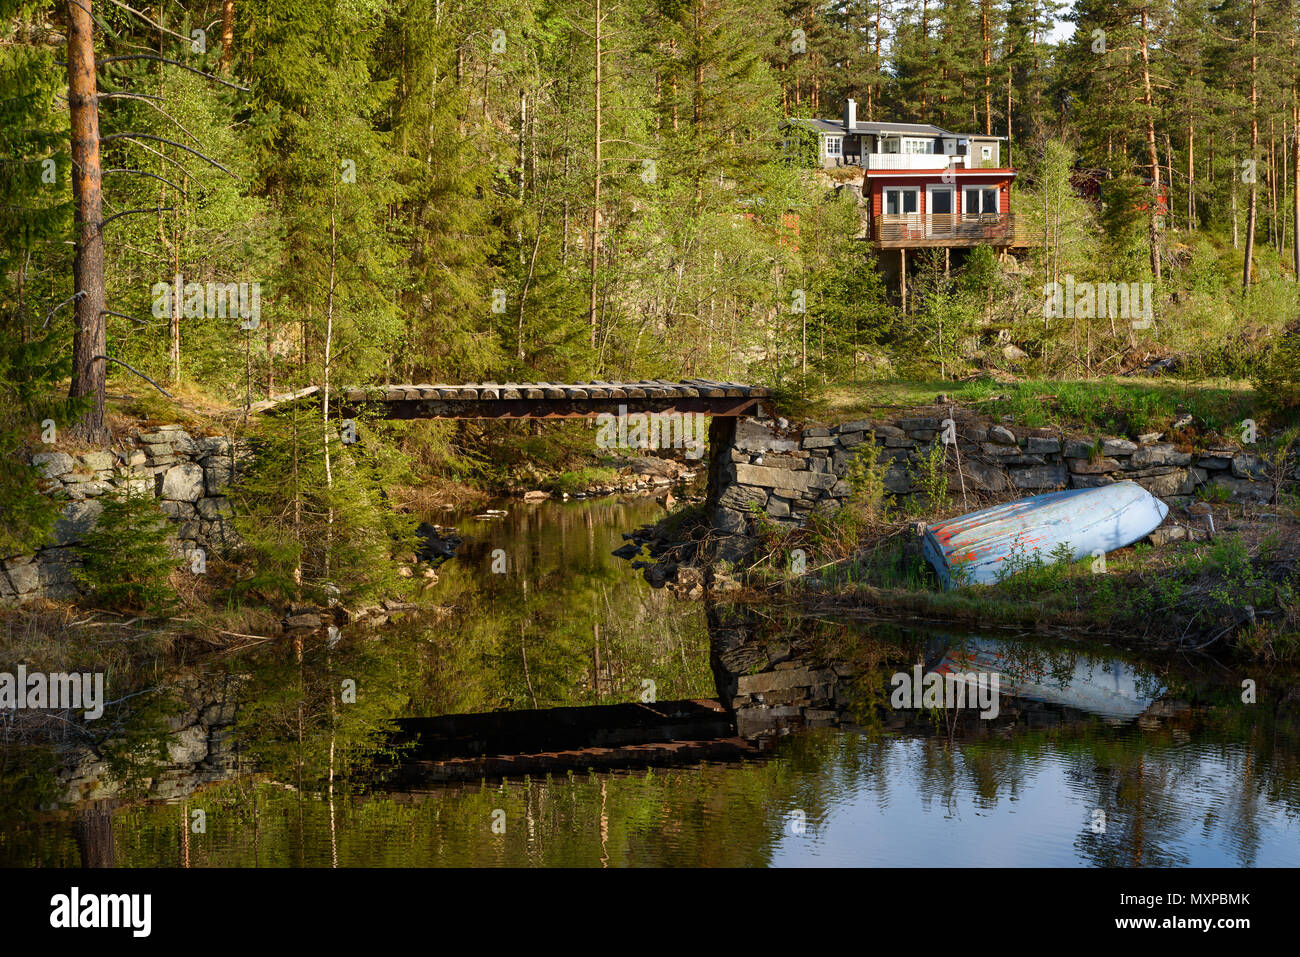 Petit pont sur une petite rivière avec une barque à l'envers à côté. Forêt et d'une maison dans l'arrière-plan. Elgsjo en dehors de Notodden, la Norvège. Banque D'Images